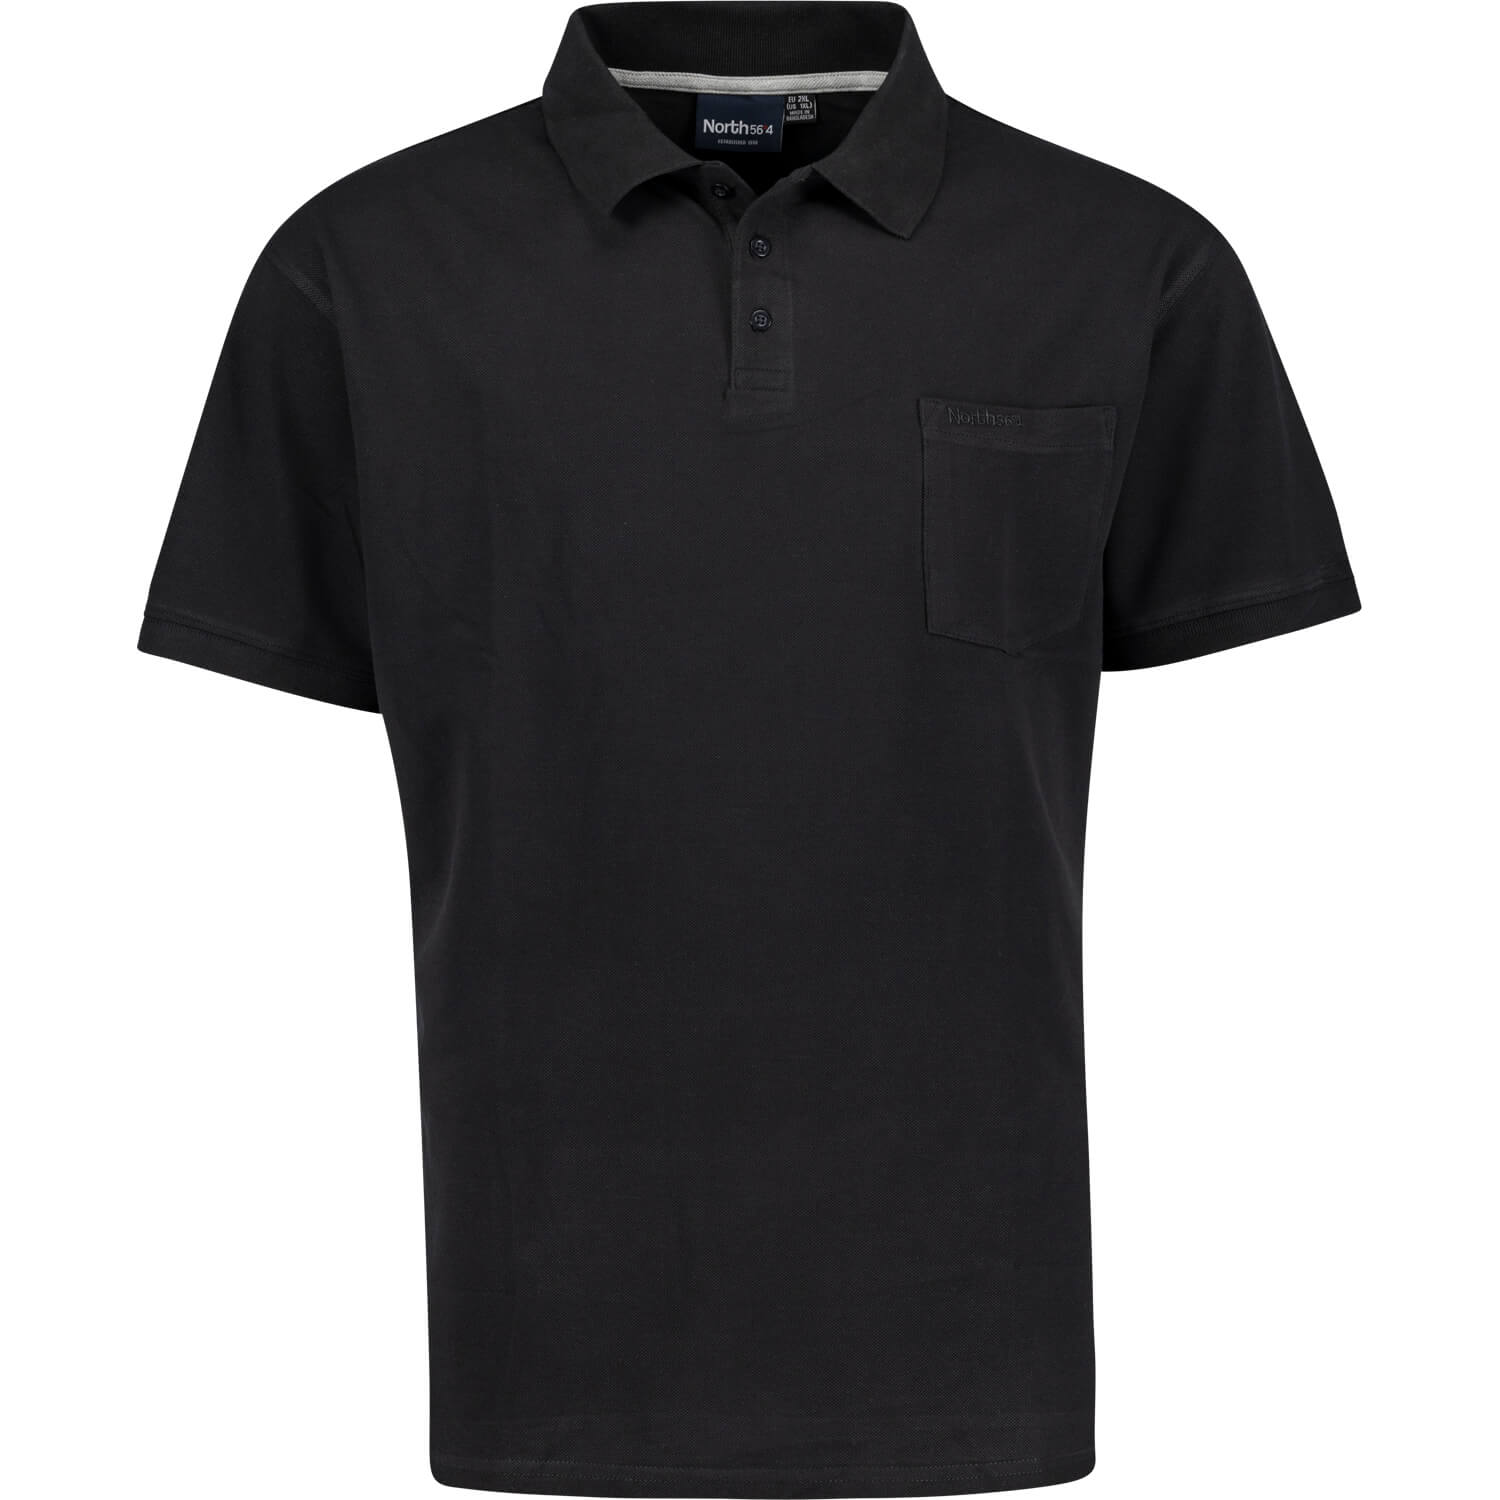 Schwarzes Pique Poloshirt von Greyes/North 56°4 in Übergrößen bis 8XL